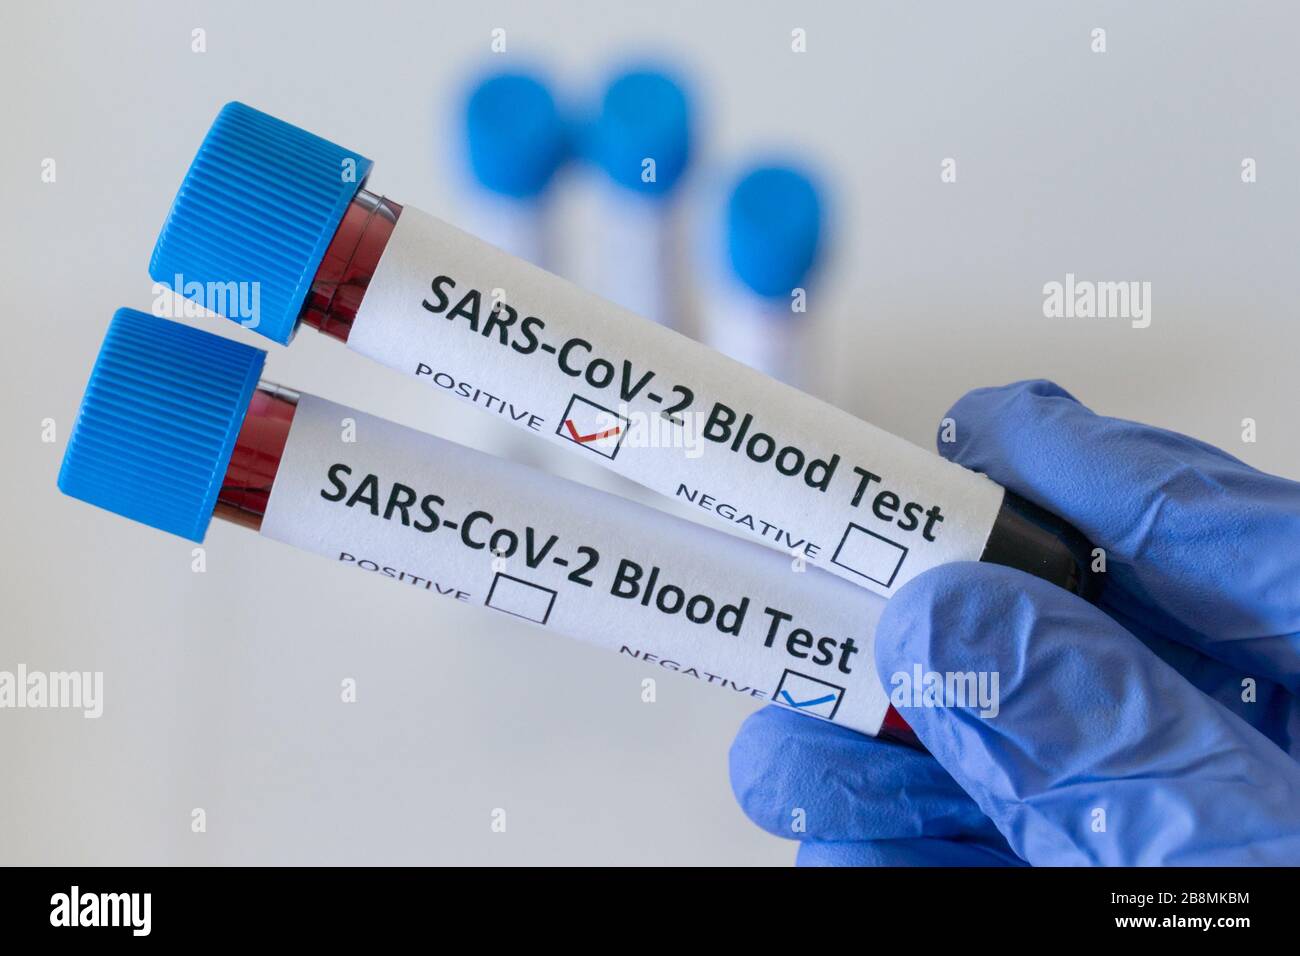 Positives Bluttestergebnis für SARS COV 2, Coronavirus, das die Krankheit Covid 19 verursacht Stockfoto